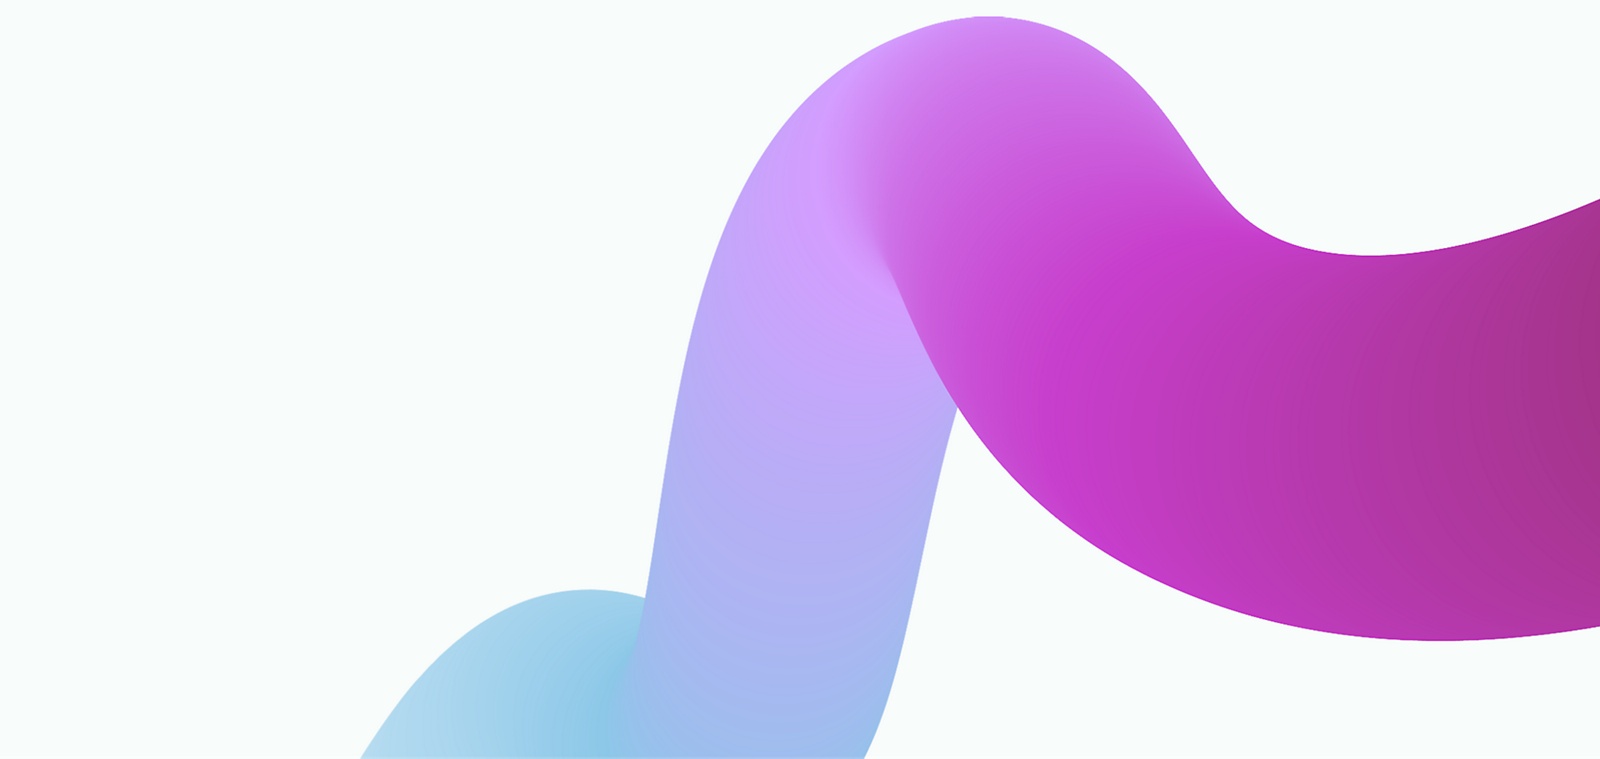 Абстрактное изображение с гладкой, струящейся лентой с градиентным переходом от синего на одном конце к фиолетовому на другом 